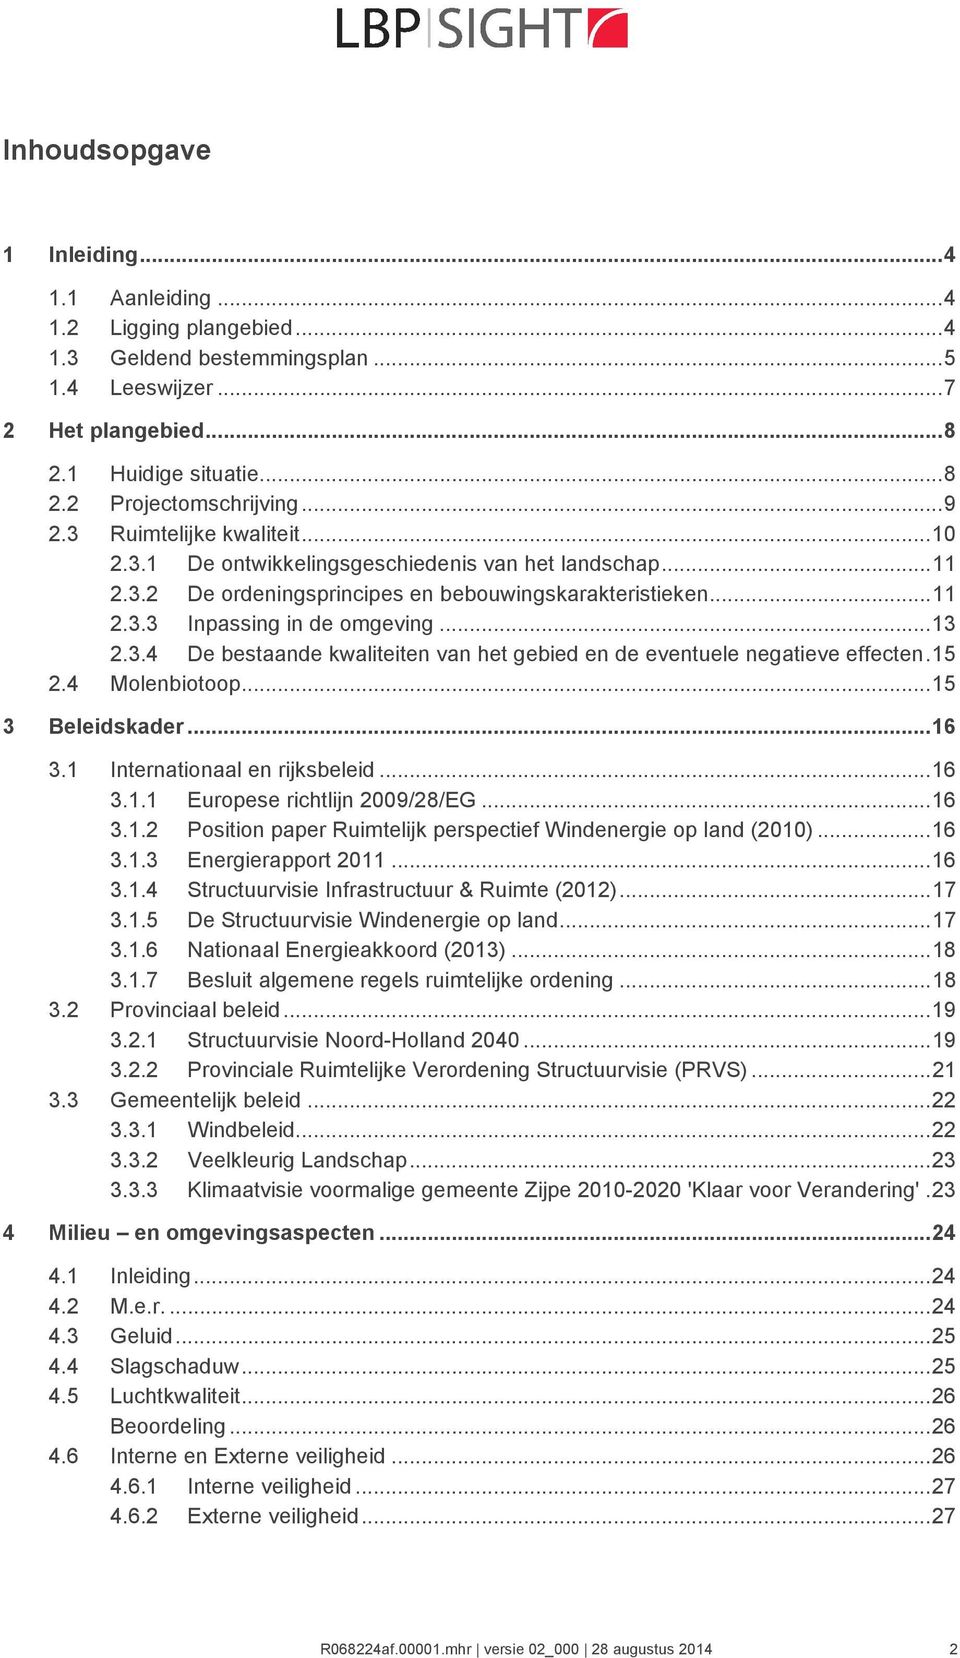 15 2.4 Molenbiotoop...15 3 Beleidskader...16 3.1 Internationaal en rijksbeleid...16 3.1.1 Europese richtlijn 2009/28/EG...16 3.1.2 Position paper Ruimtelijk perspectief Windenergie op land (2010).